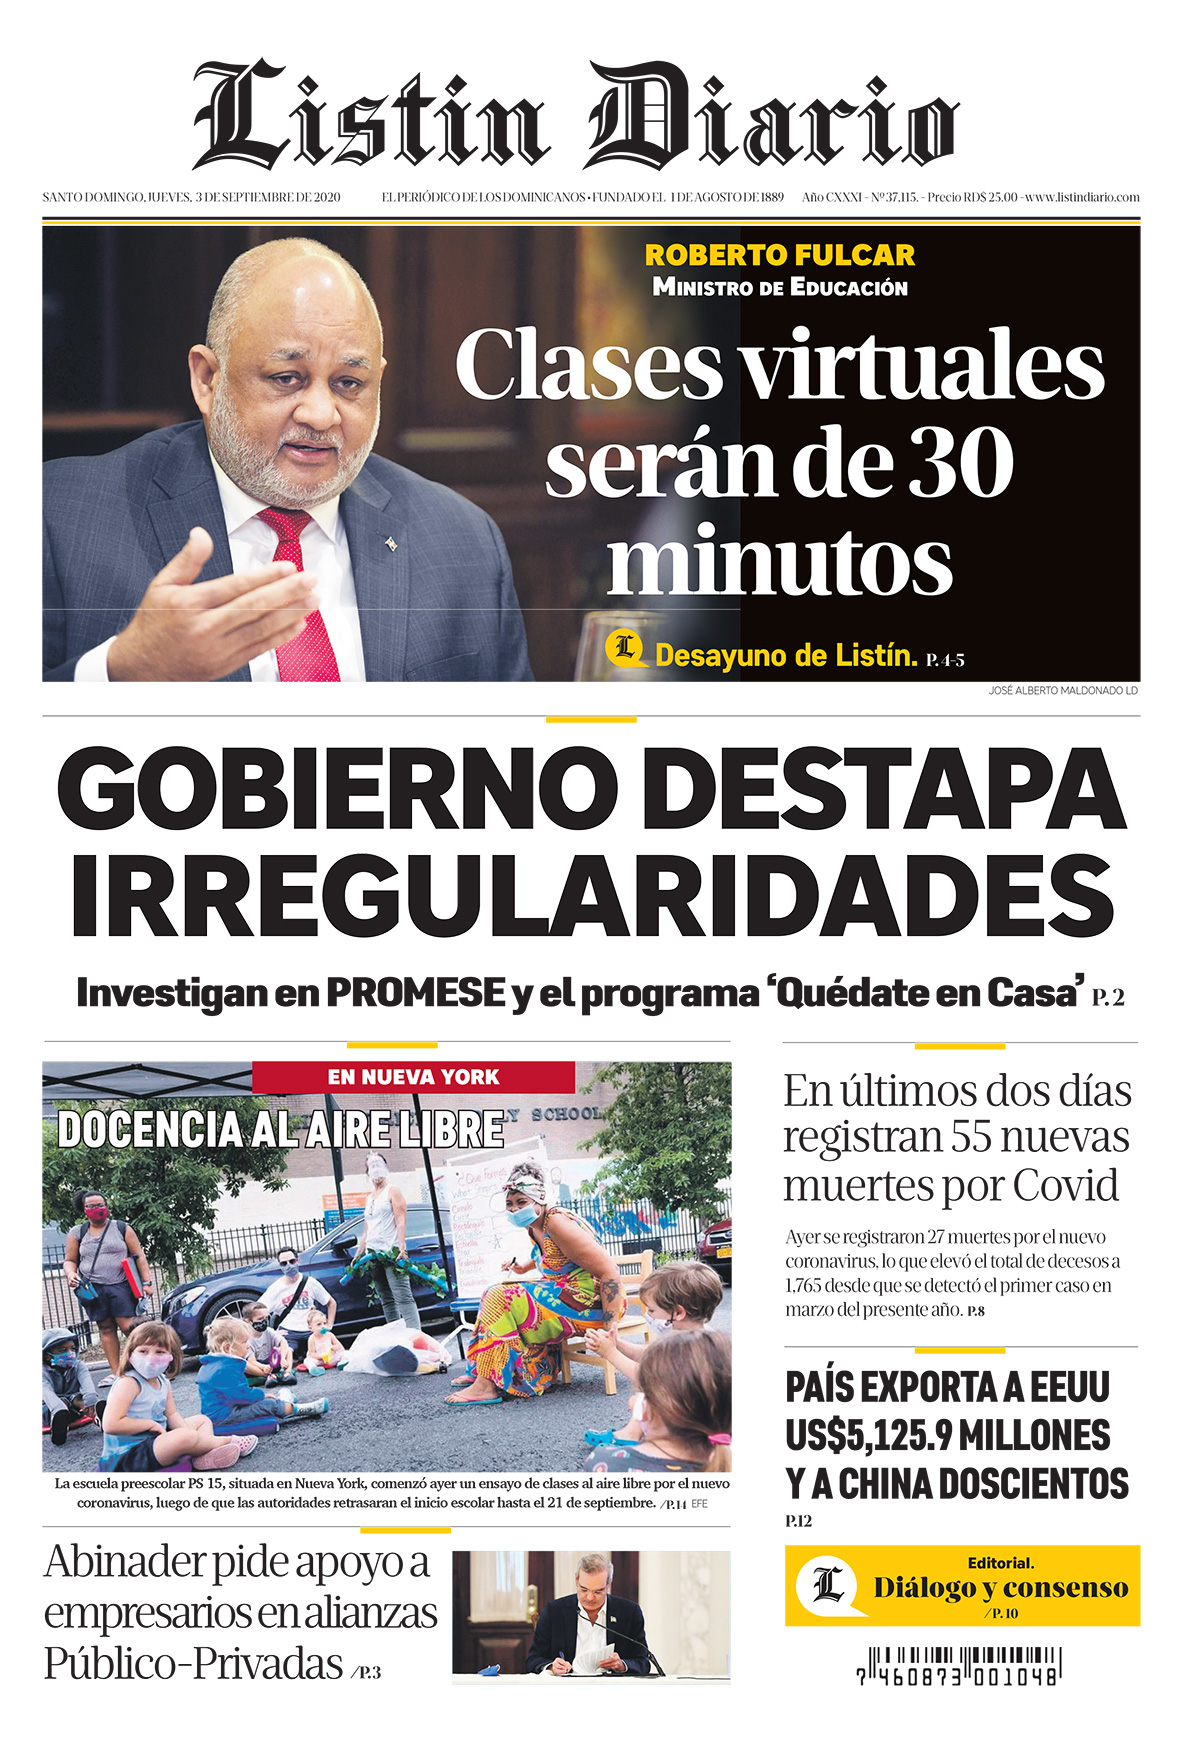 Portada Periódico Listín Diario, Jueves 03 de Septiembre, 2020